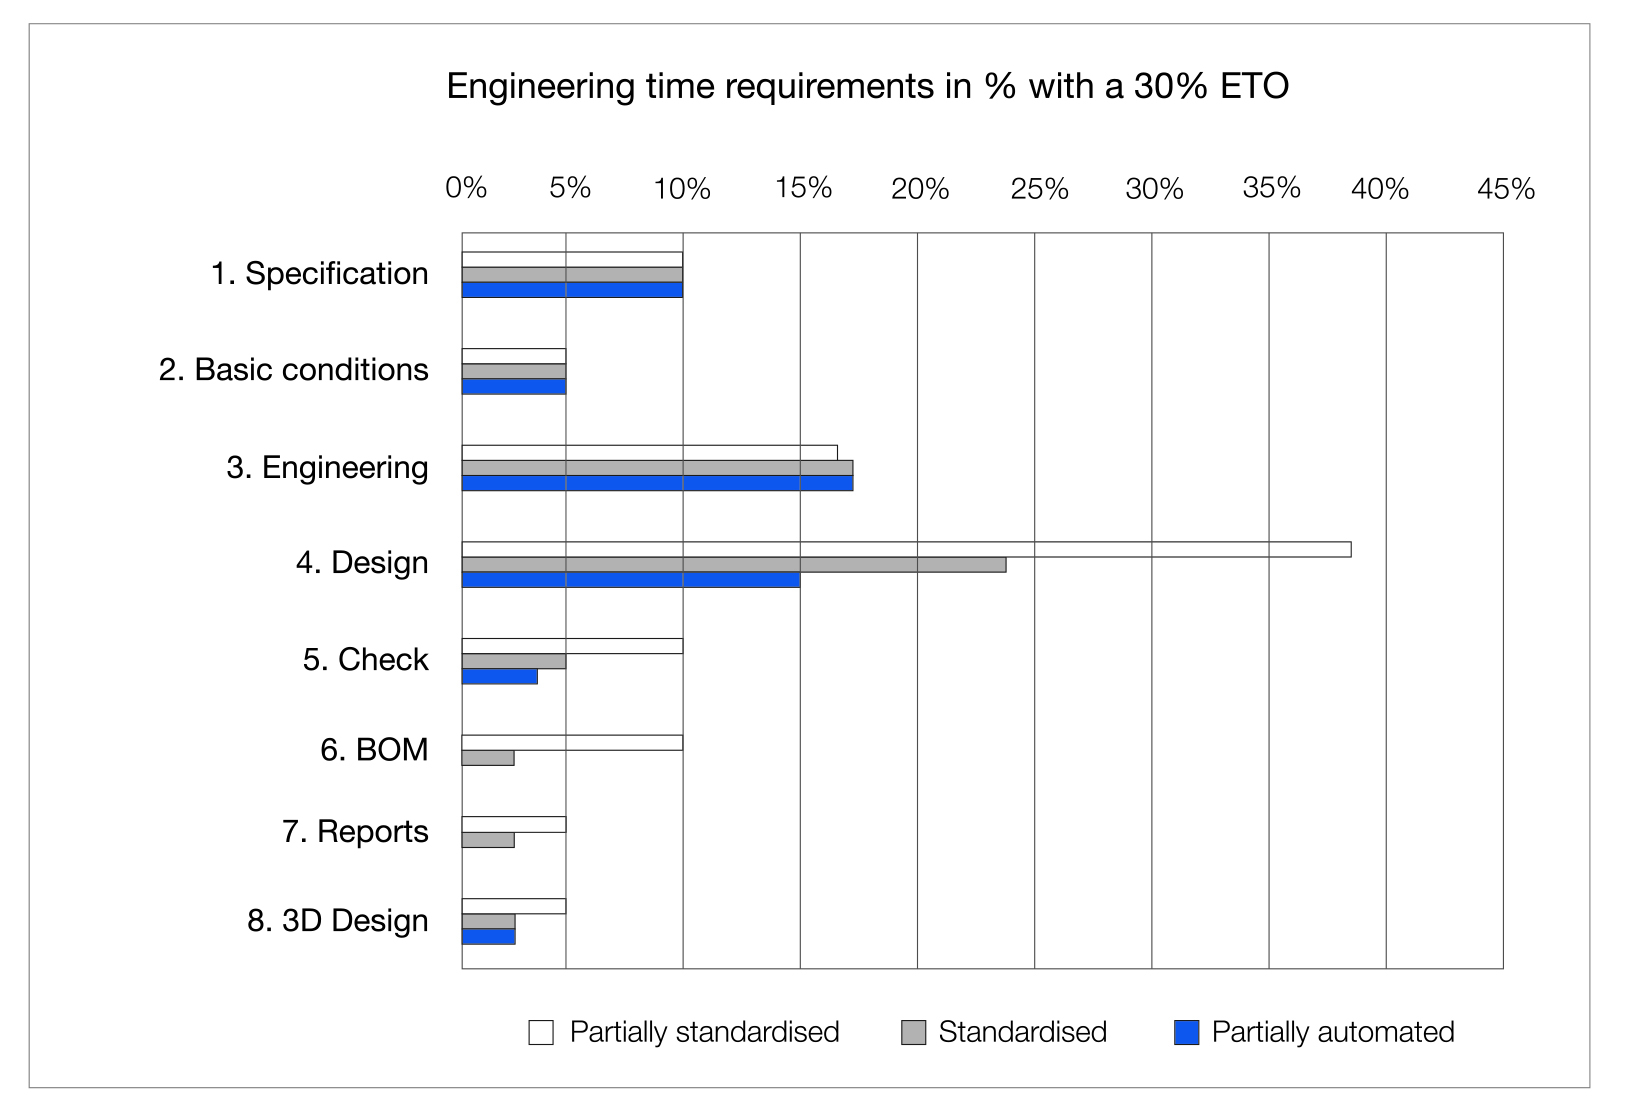 Tiempo típico necesario para los pasos de ingeniería (1-8) en porcentaje correspondiente a eLevel2